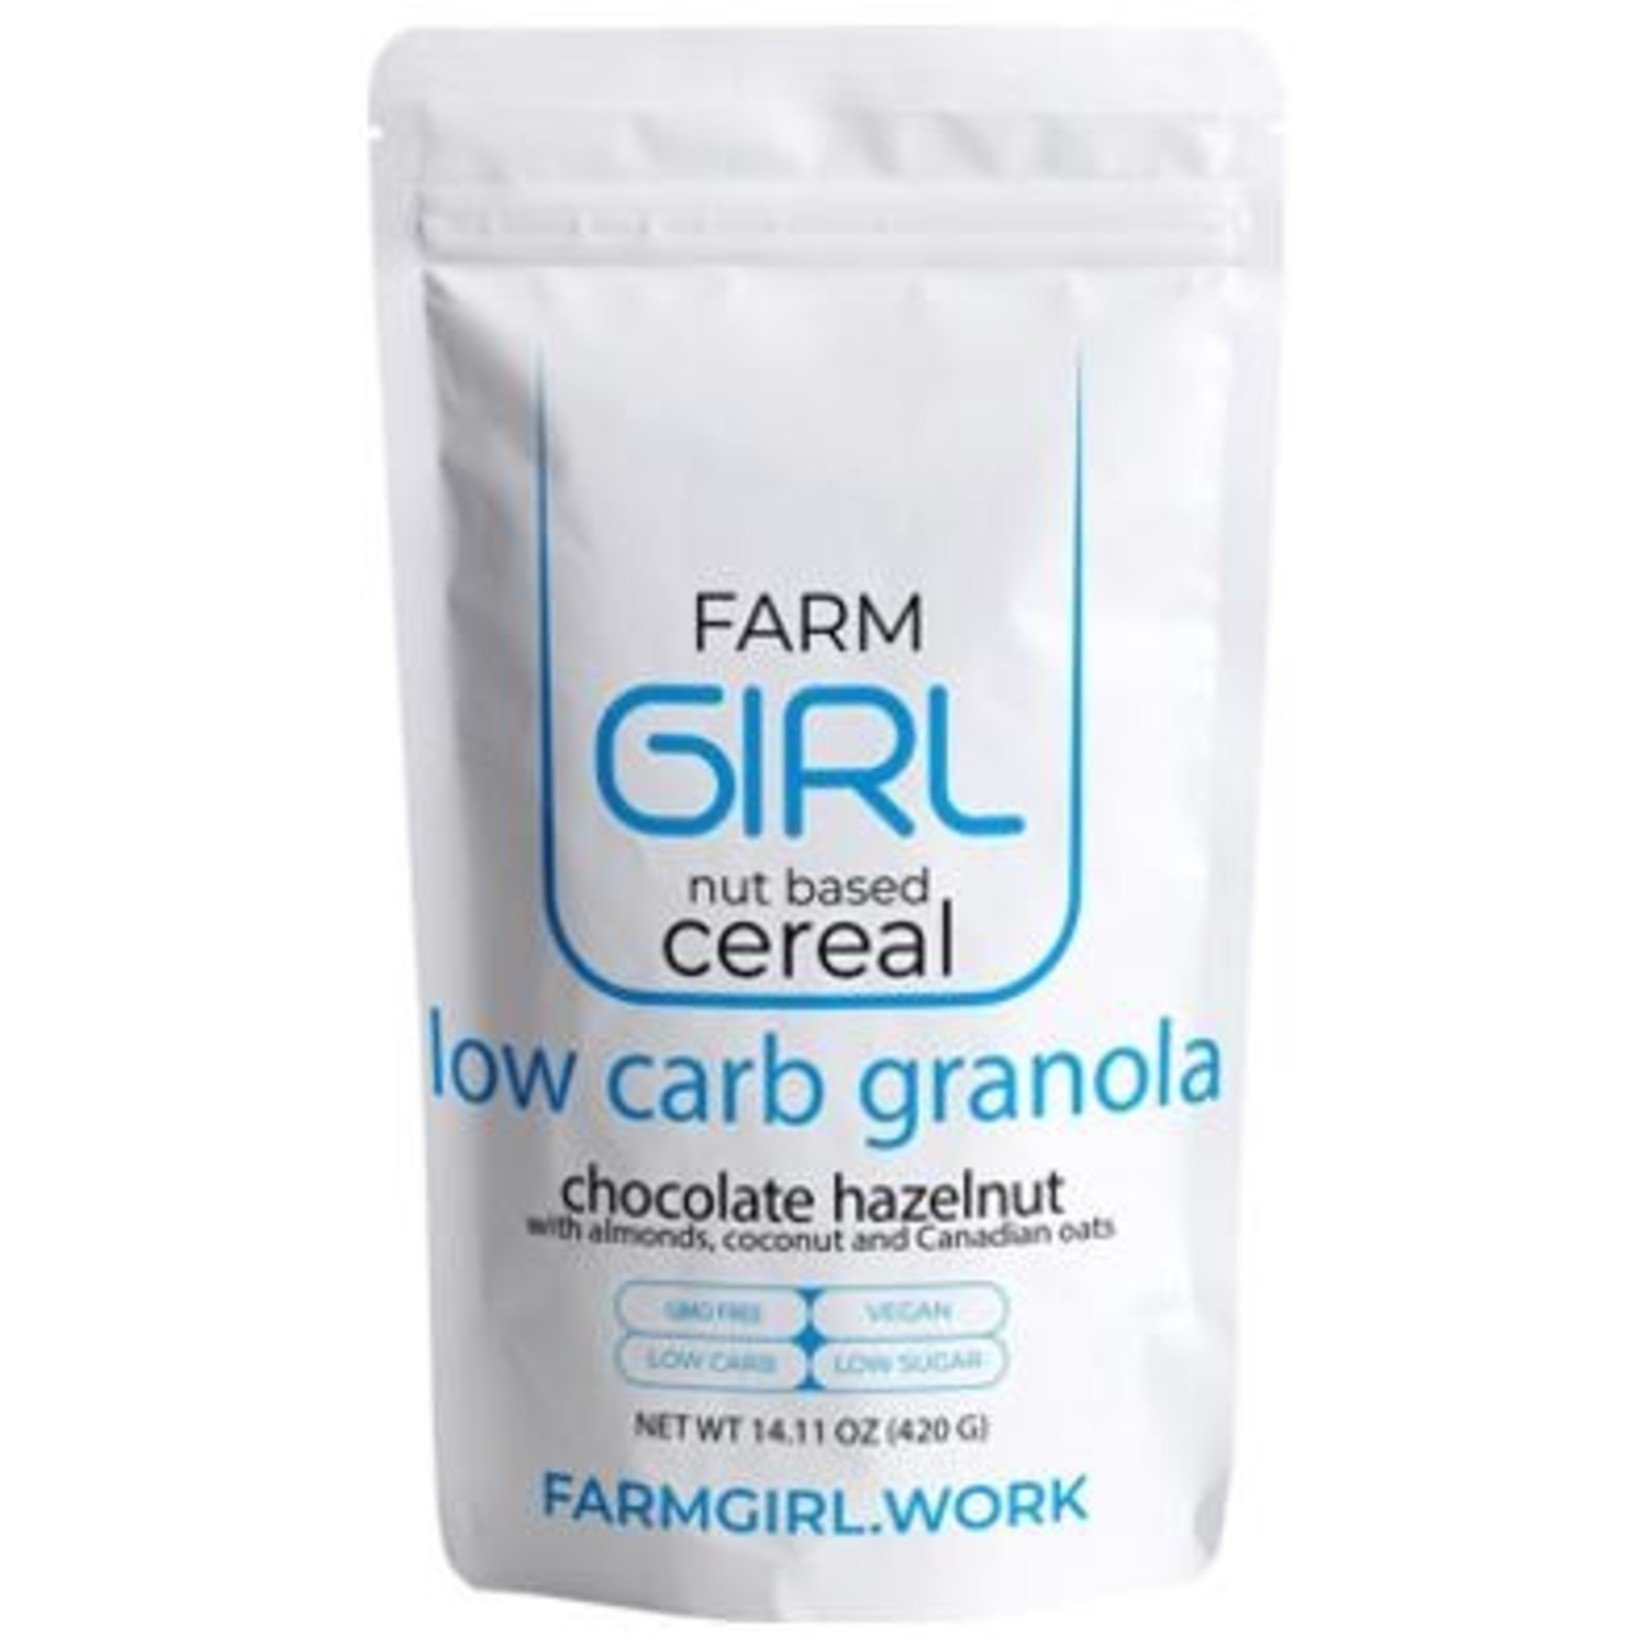 Farm Girl Farm Girl - Low Carb Granola, Chocolate Hazelnut (420g)